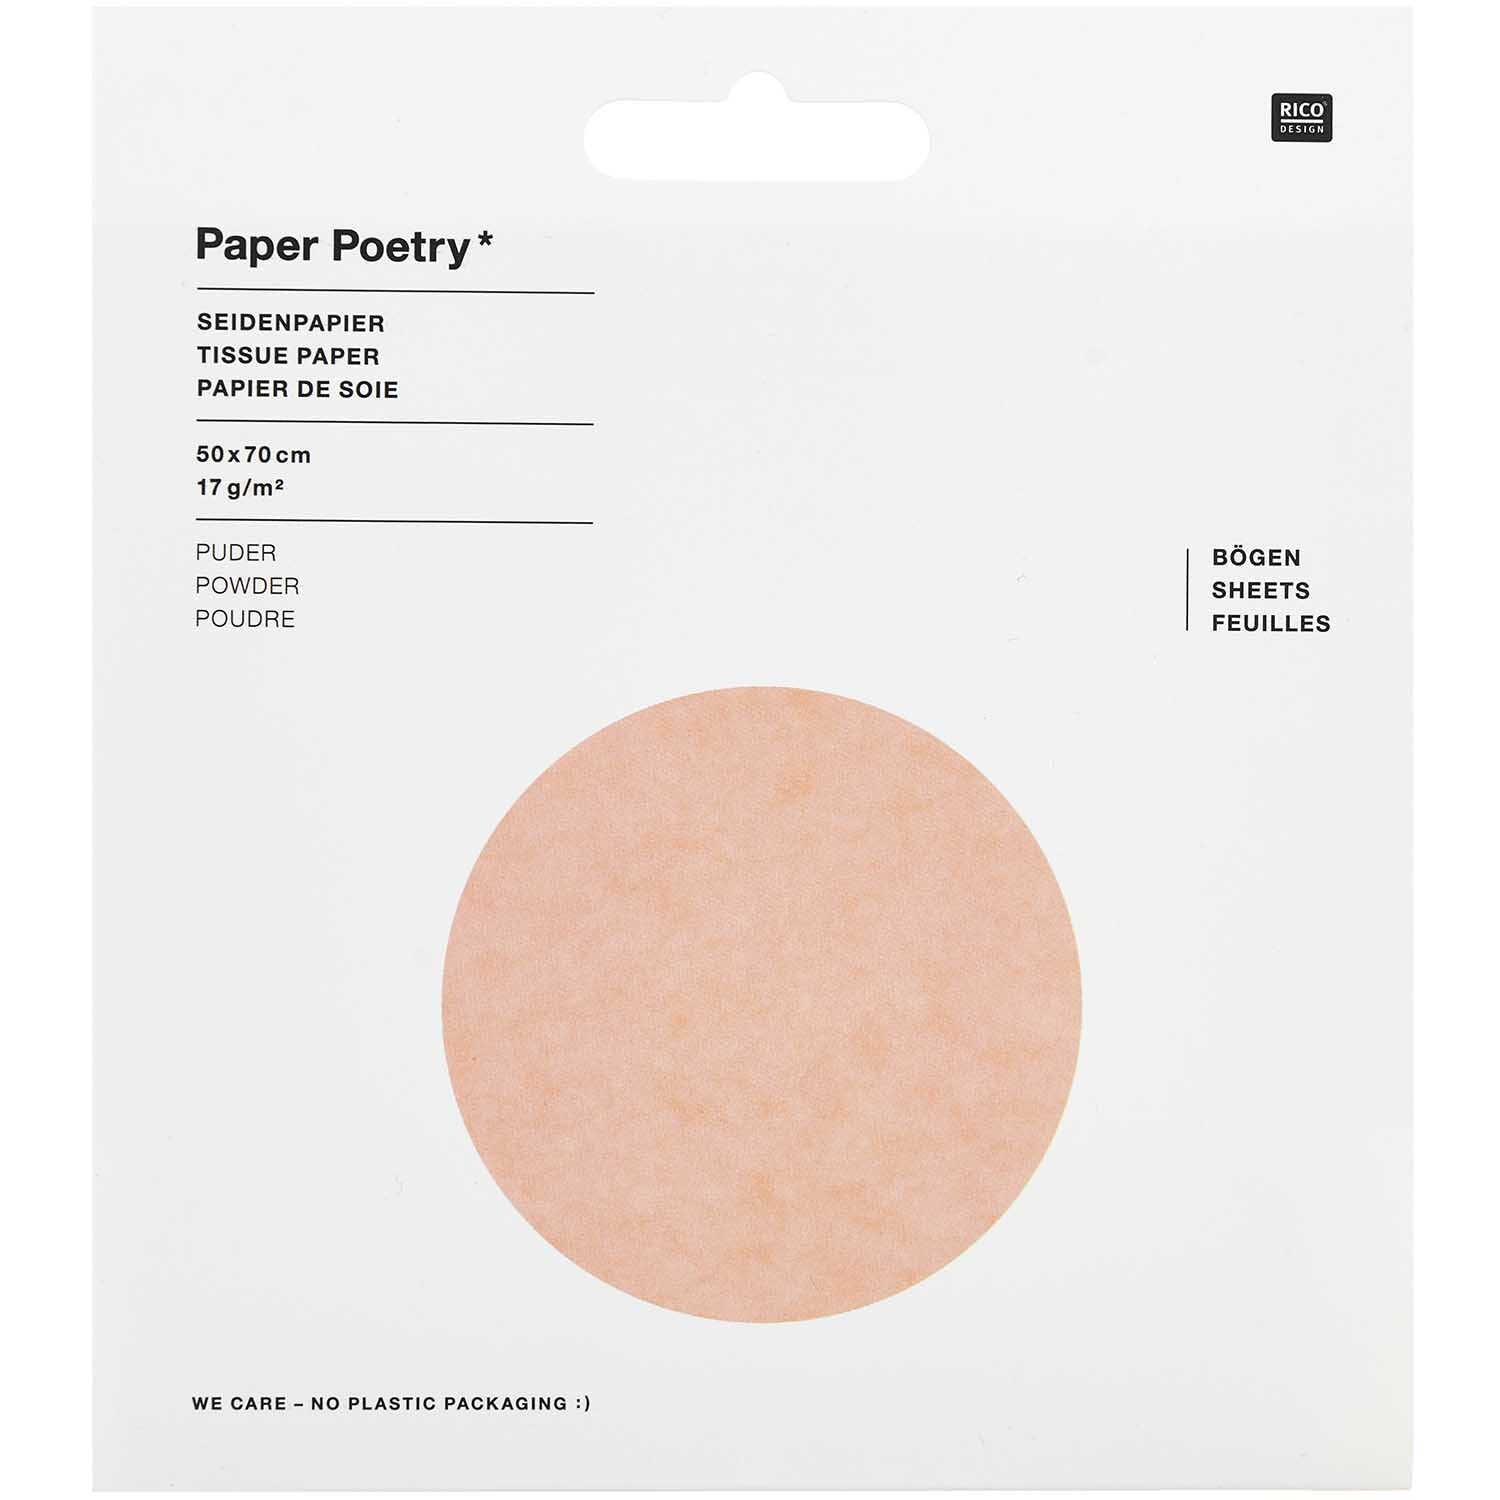 Paper Poetry Seidenpapier 50x70cm 17g/m² 5 Bogen